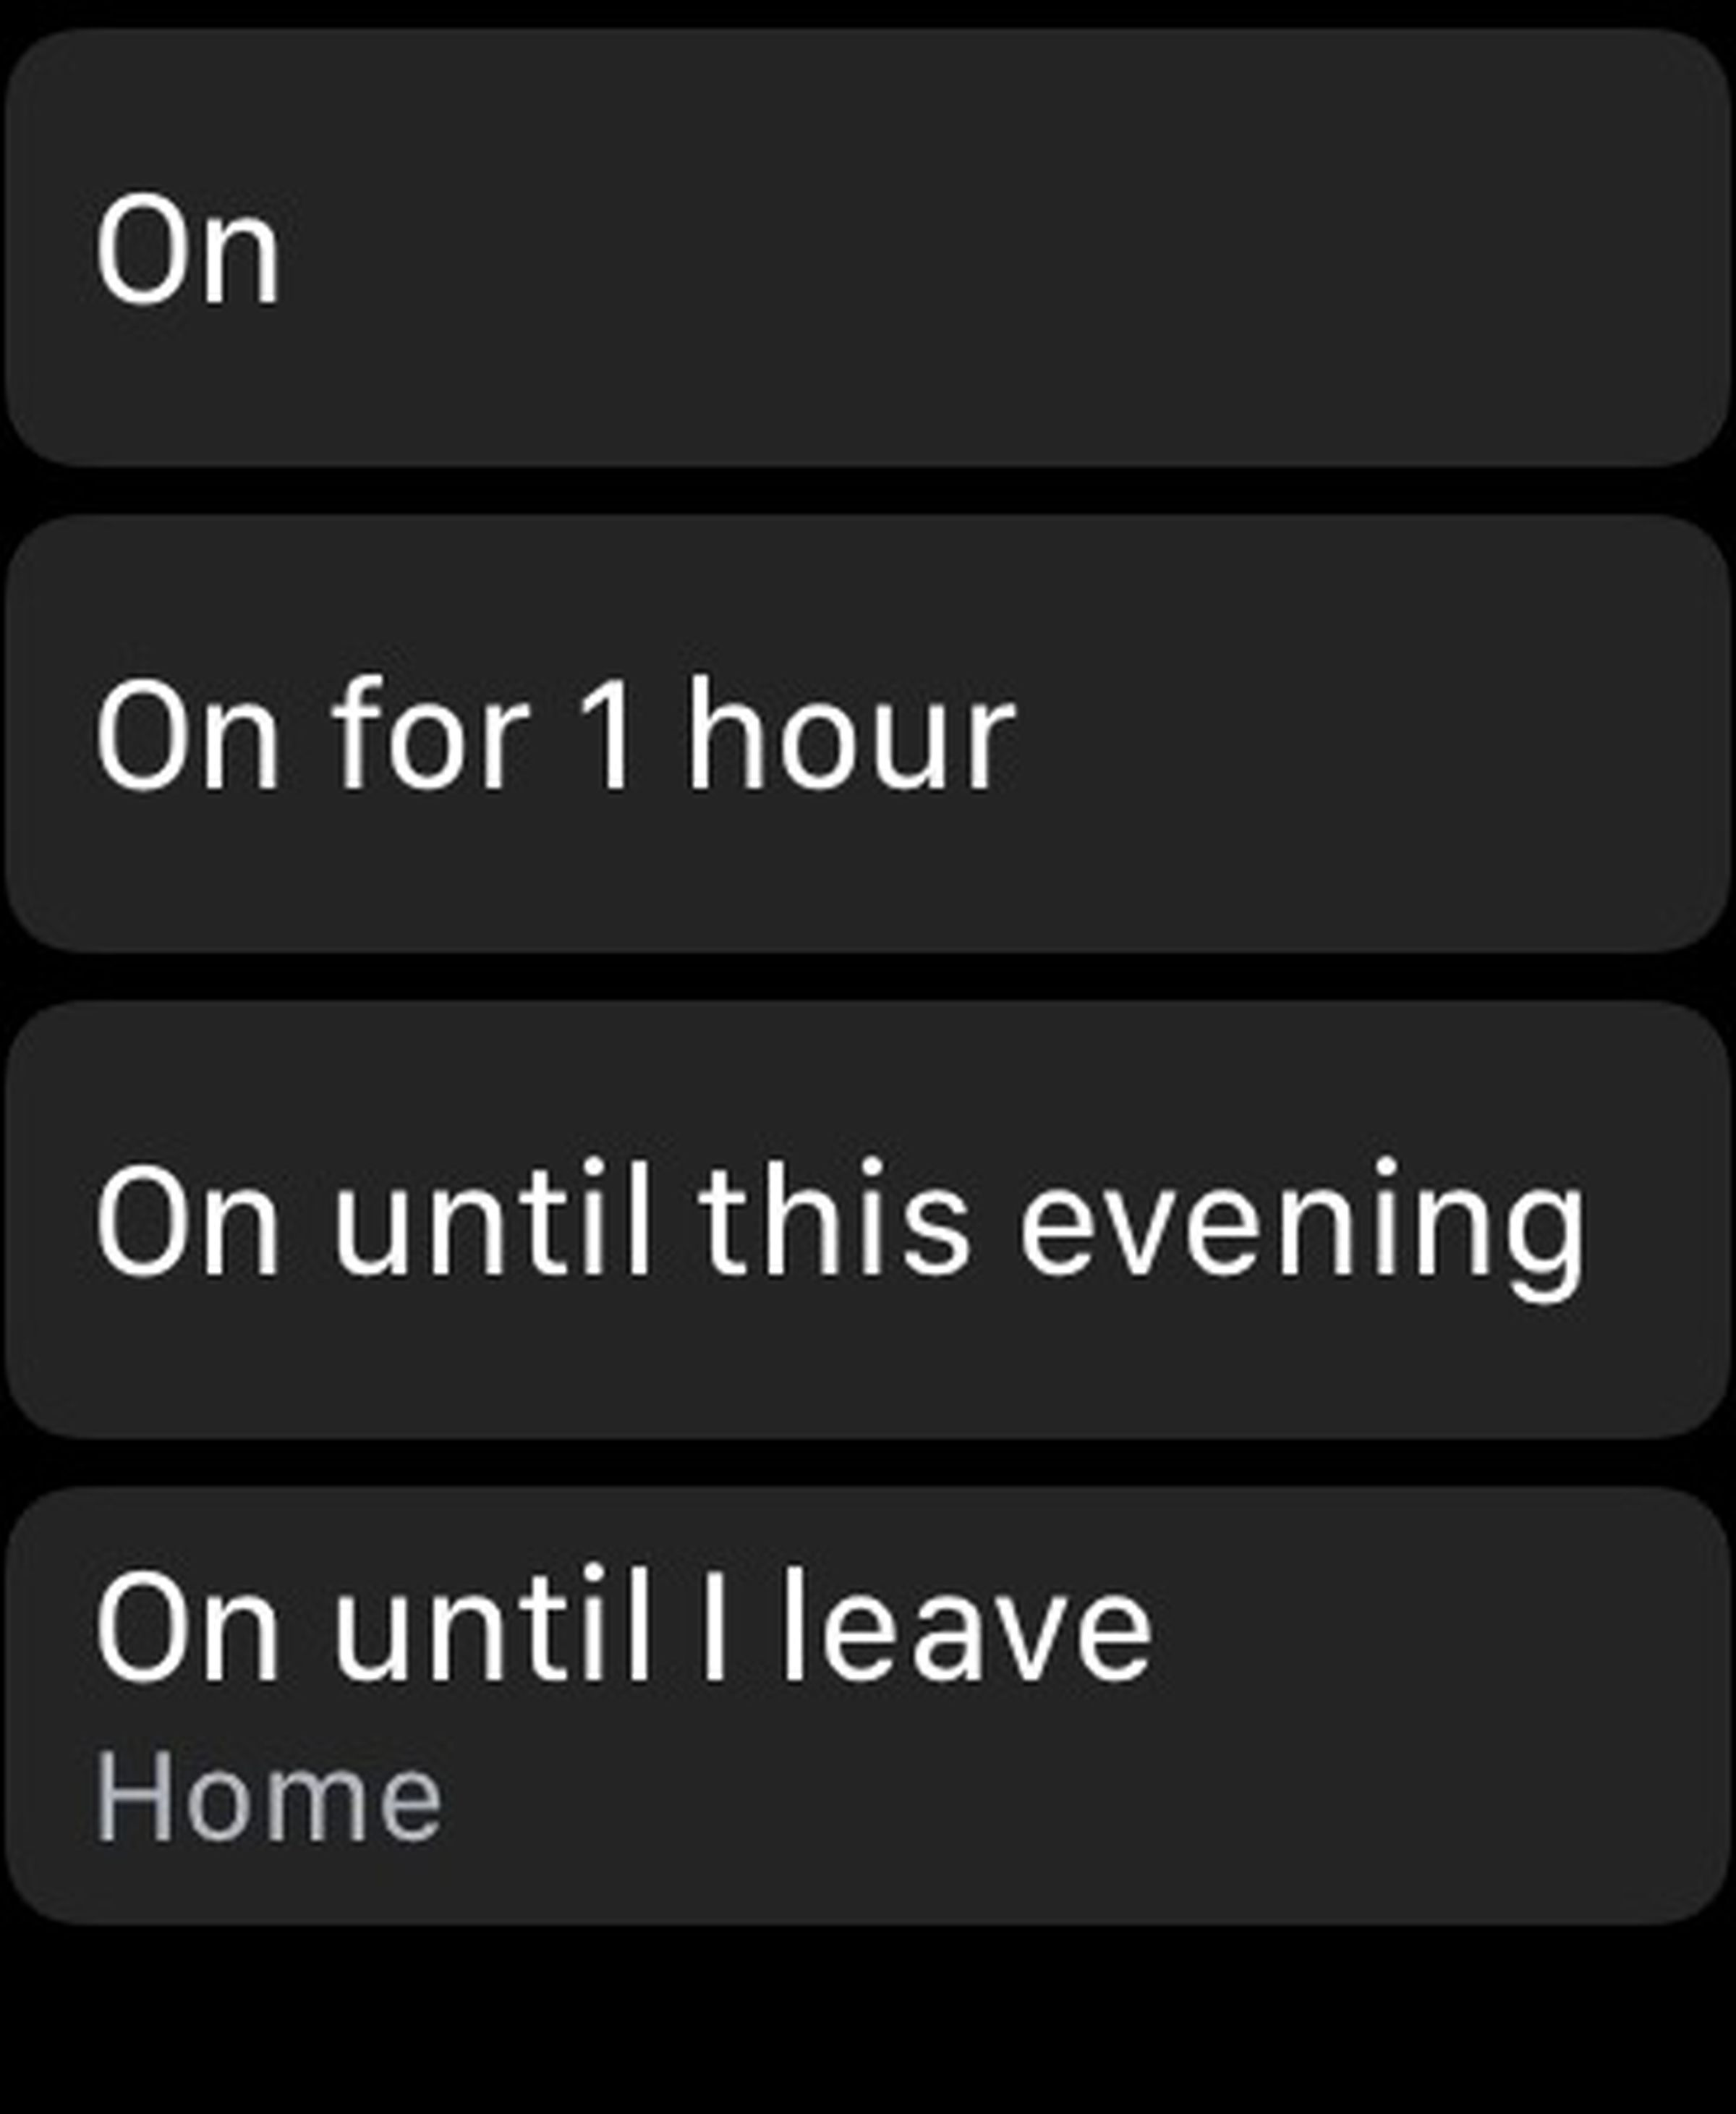 Apple Watch Do Not Disturb mode